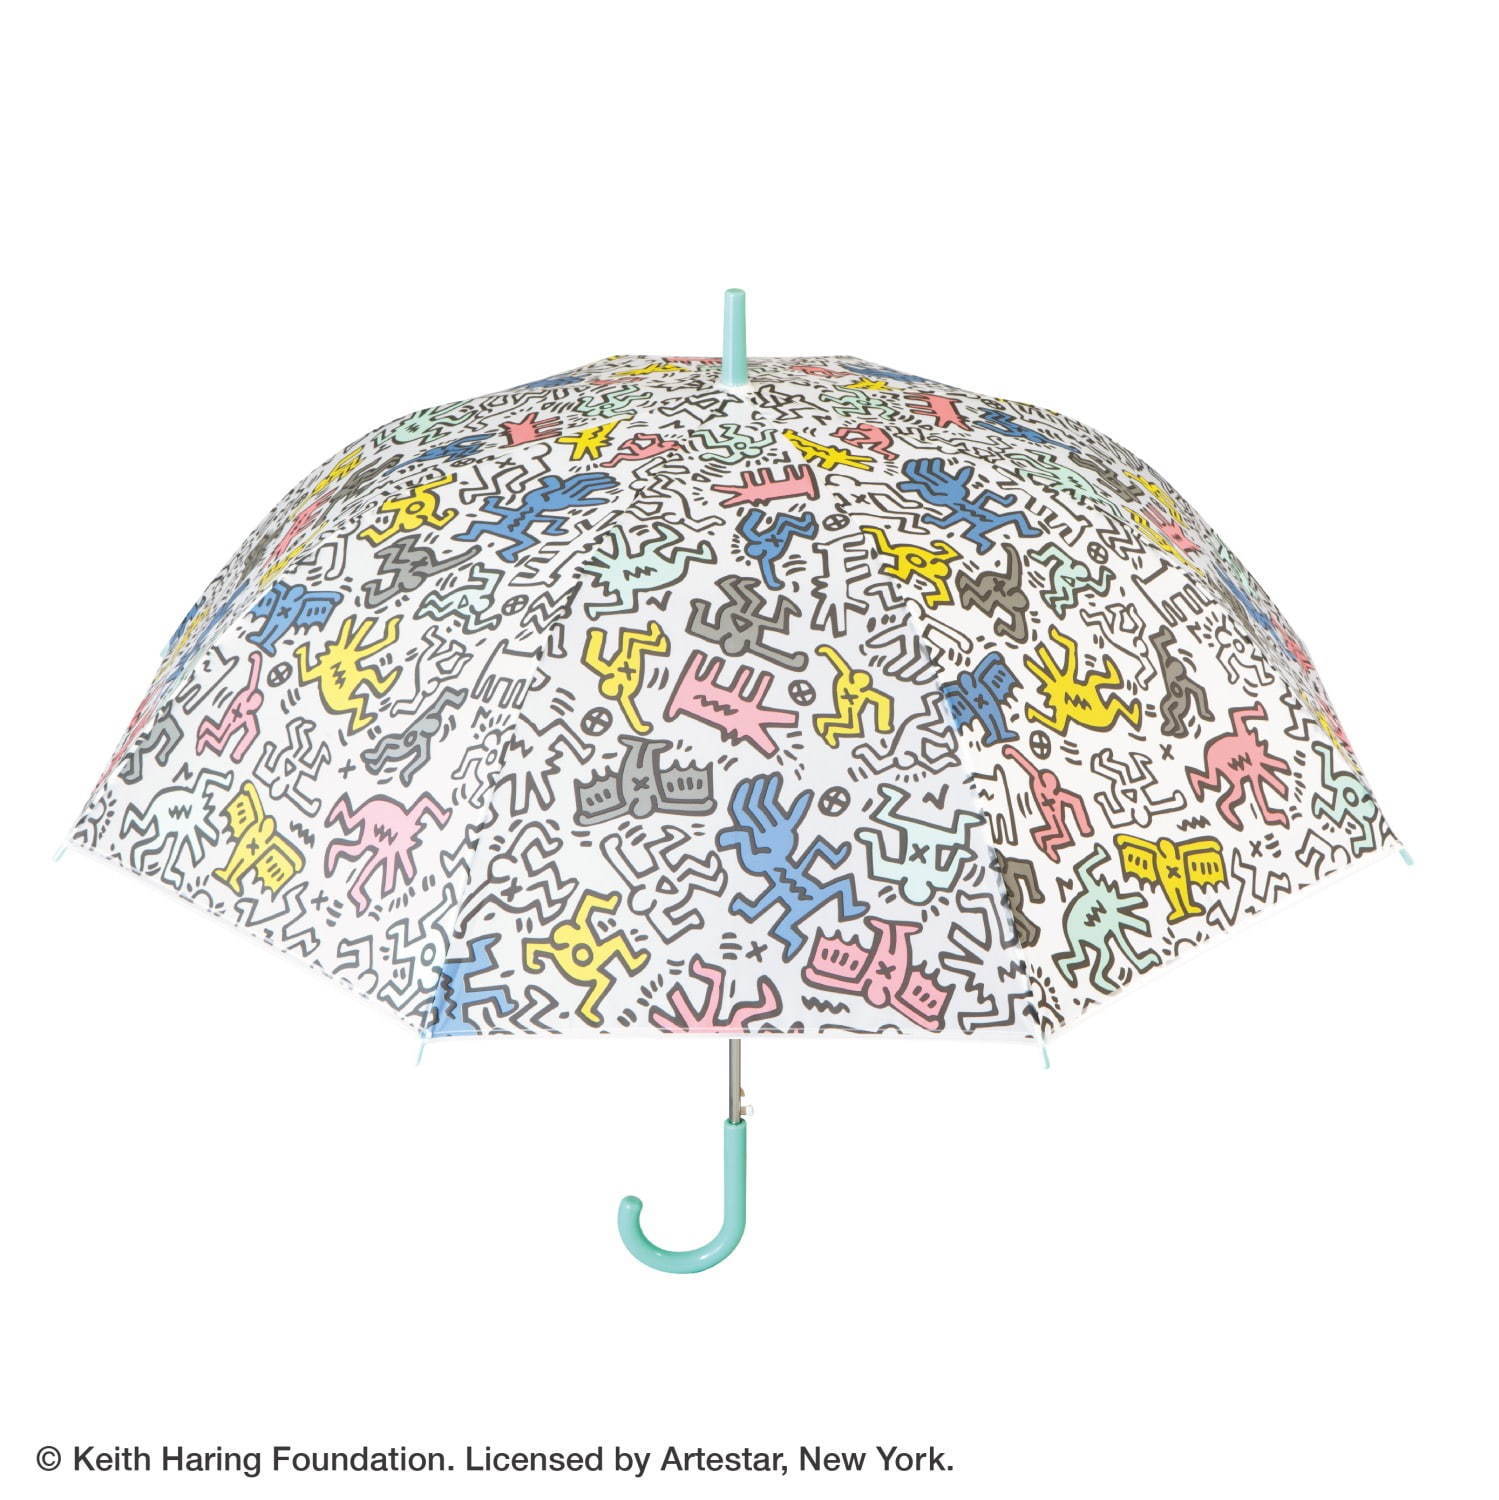 キース ヘリングのアート がビニール傘に 関東 関西エリアのセブン イレブンで販売 ファッションプレス